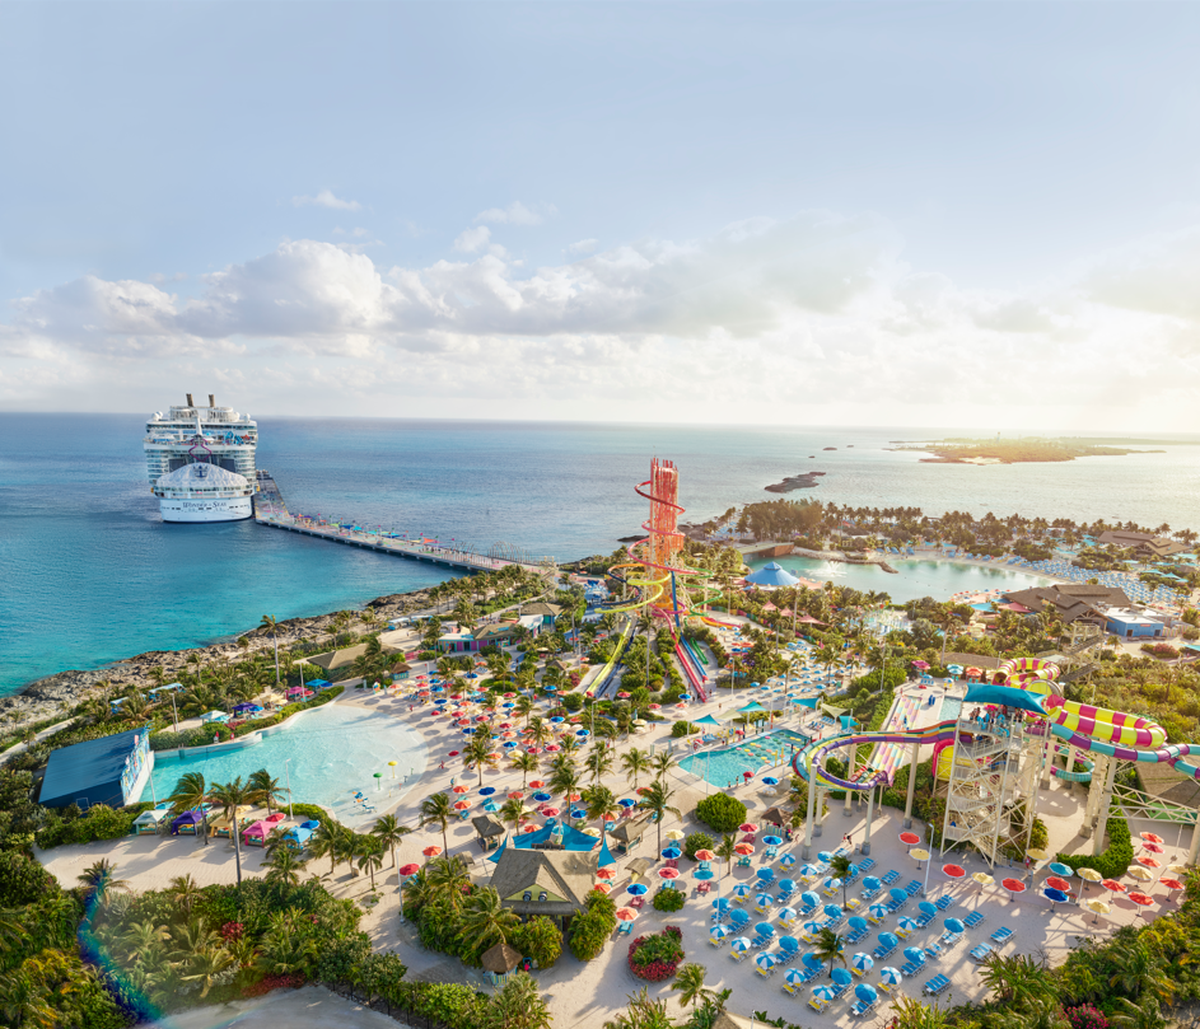 Con Royal Caribbean se puede elegir entre los barcos más grandes e innovadores del mundo –incluyendo el revolucionario Icon of the Seas– y visitar destinos espectaculares en el Caribe, como la isla privada Perfect Day at CocoCay.